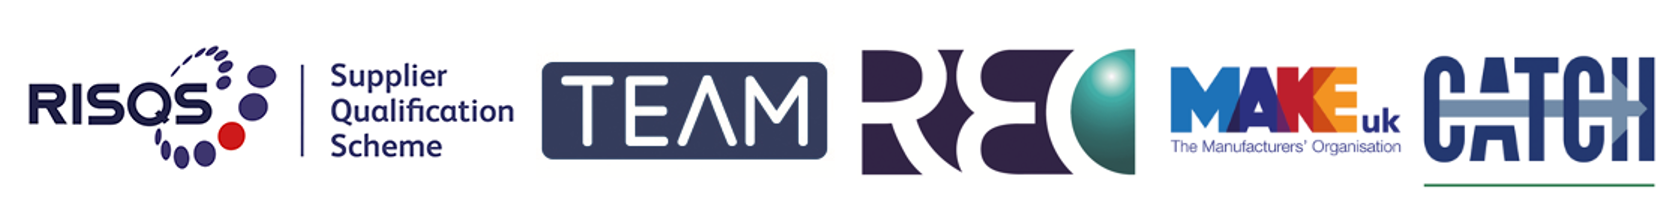 Industry partner logos; RISQS, TEAM, REC, Make UK, CATCH